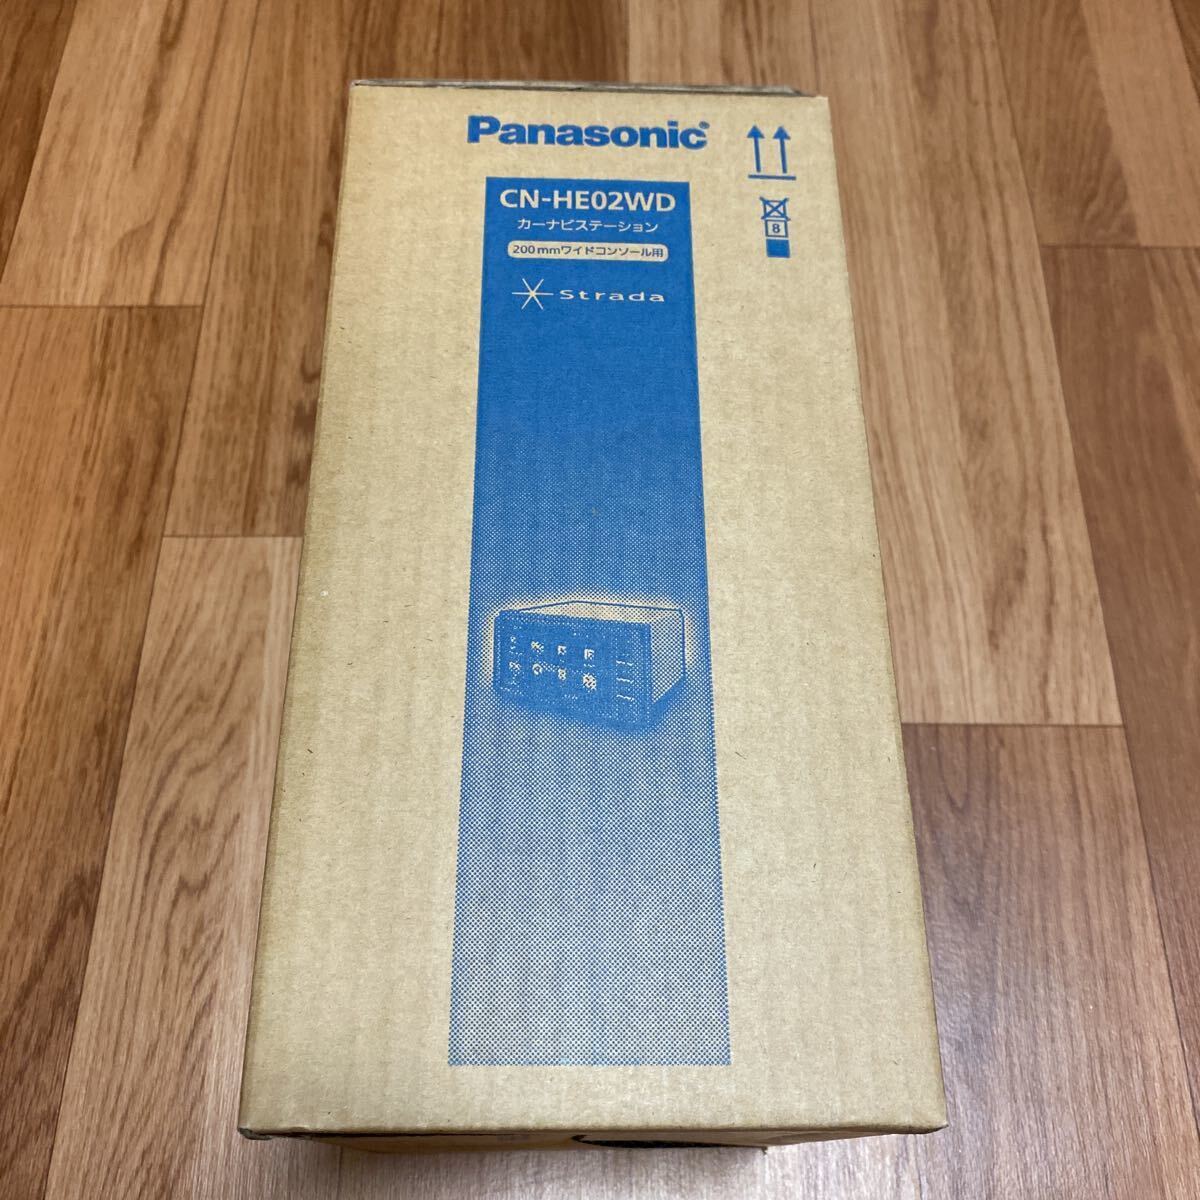 Panasonic ＣＮ－HE02WD パナソニック SDナビ カーナビ ステーション 200mm ワイド DVD 新品 送料無料 の画像4